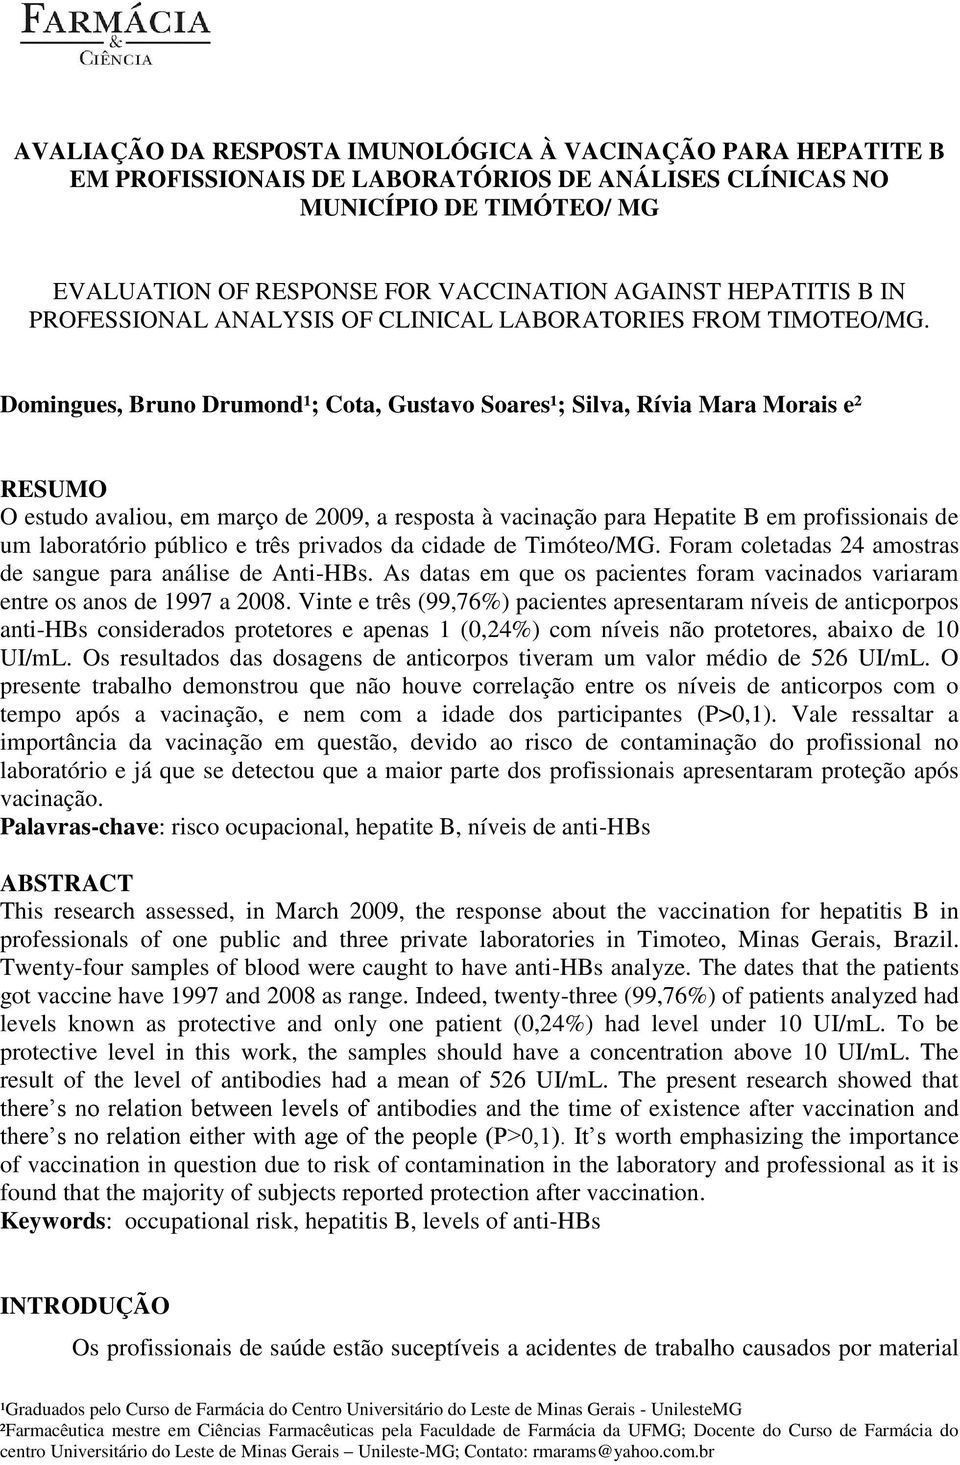 Domingues, Bruno Drumond¹; Cota, Gustavo Soares¹; Silva, Rívia Mara Morais e² RESUMO O estudo avaliou, em março de 2009, a resposta à vacinação para Hepatite B em profissionais de um laboratório